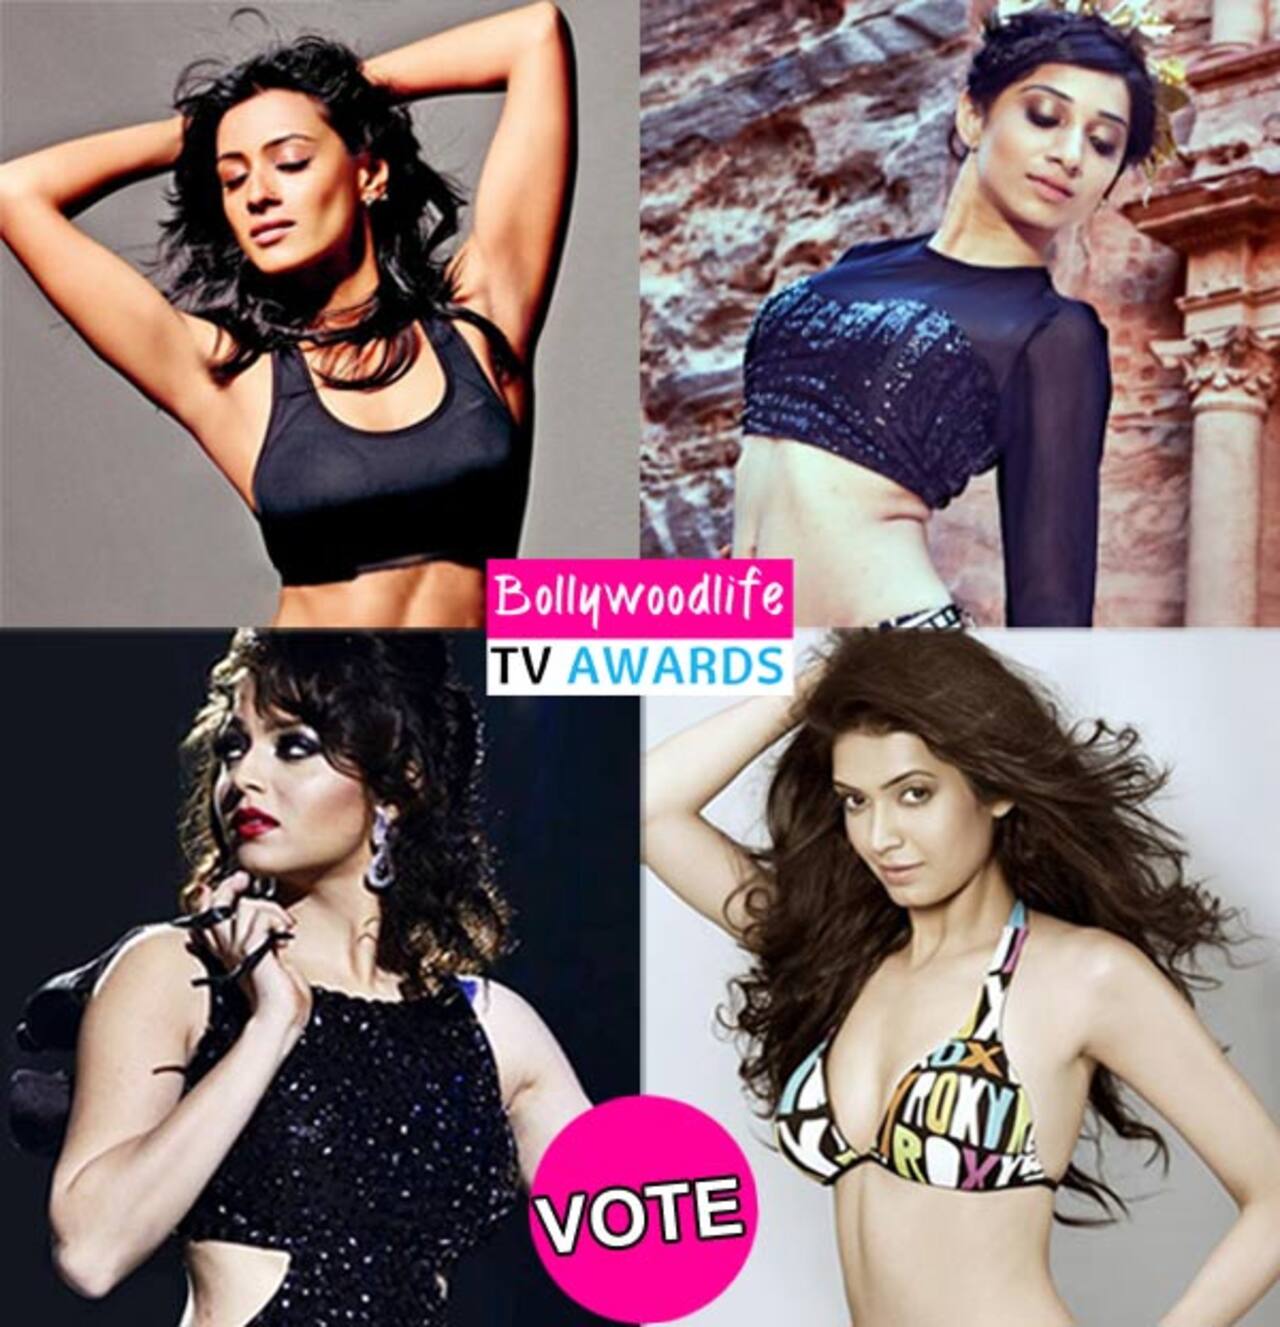 BollywoodLife TV Awards 2015: Drashti Dhami, Karishma Tanna, Anita Hassanandani- who is the hottest TV actress? Vote!